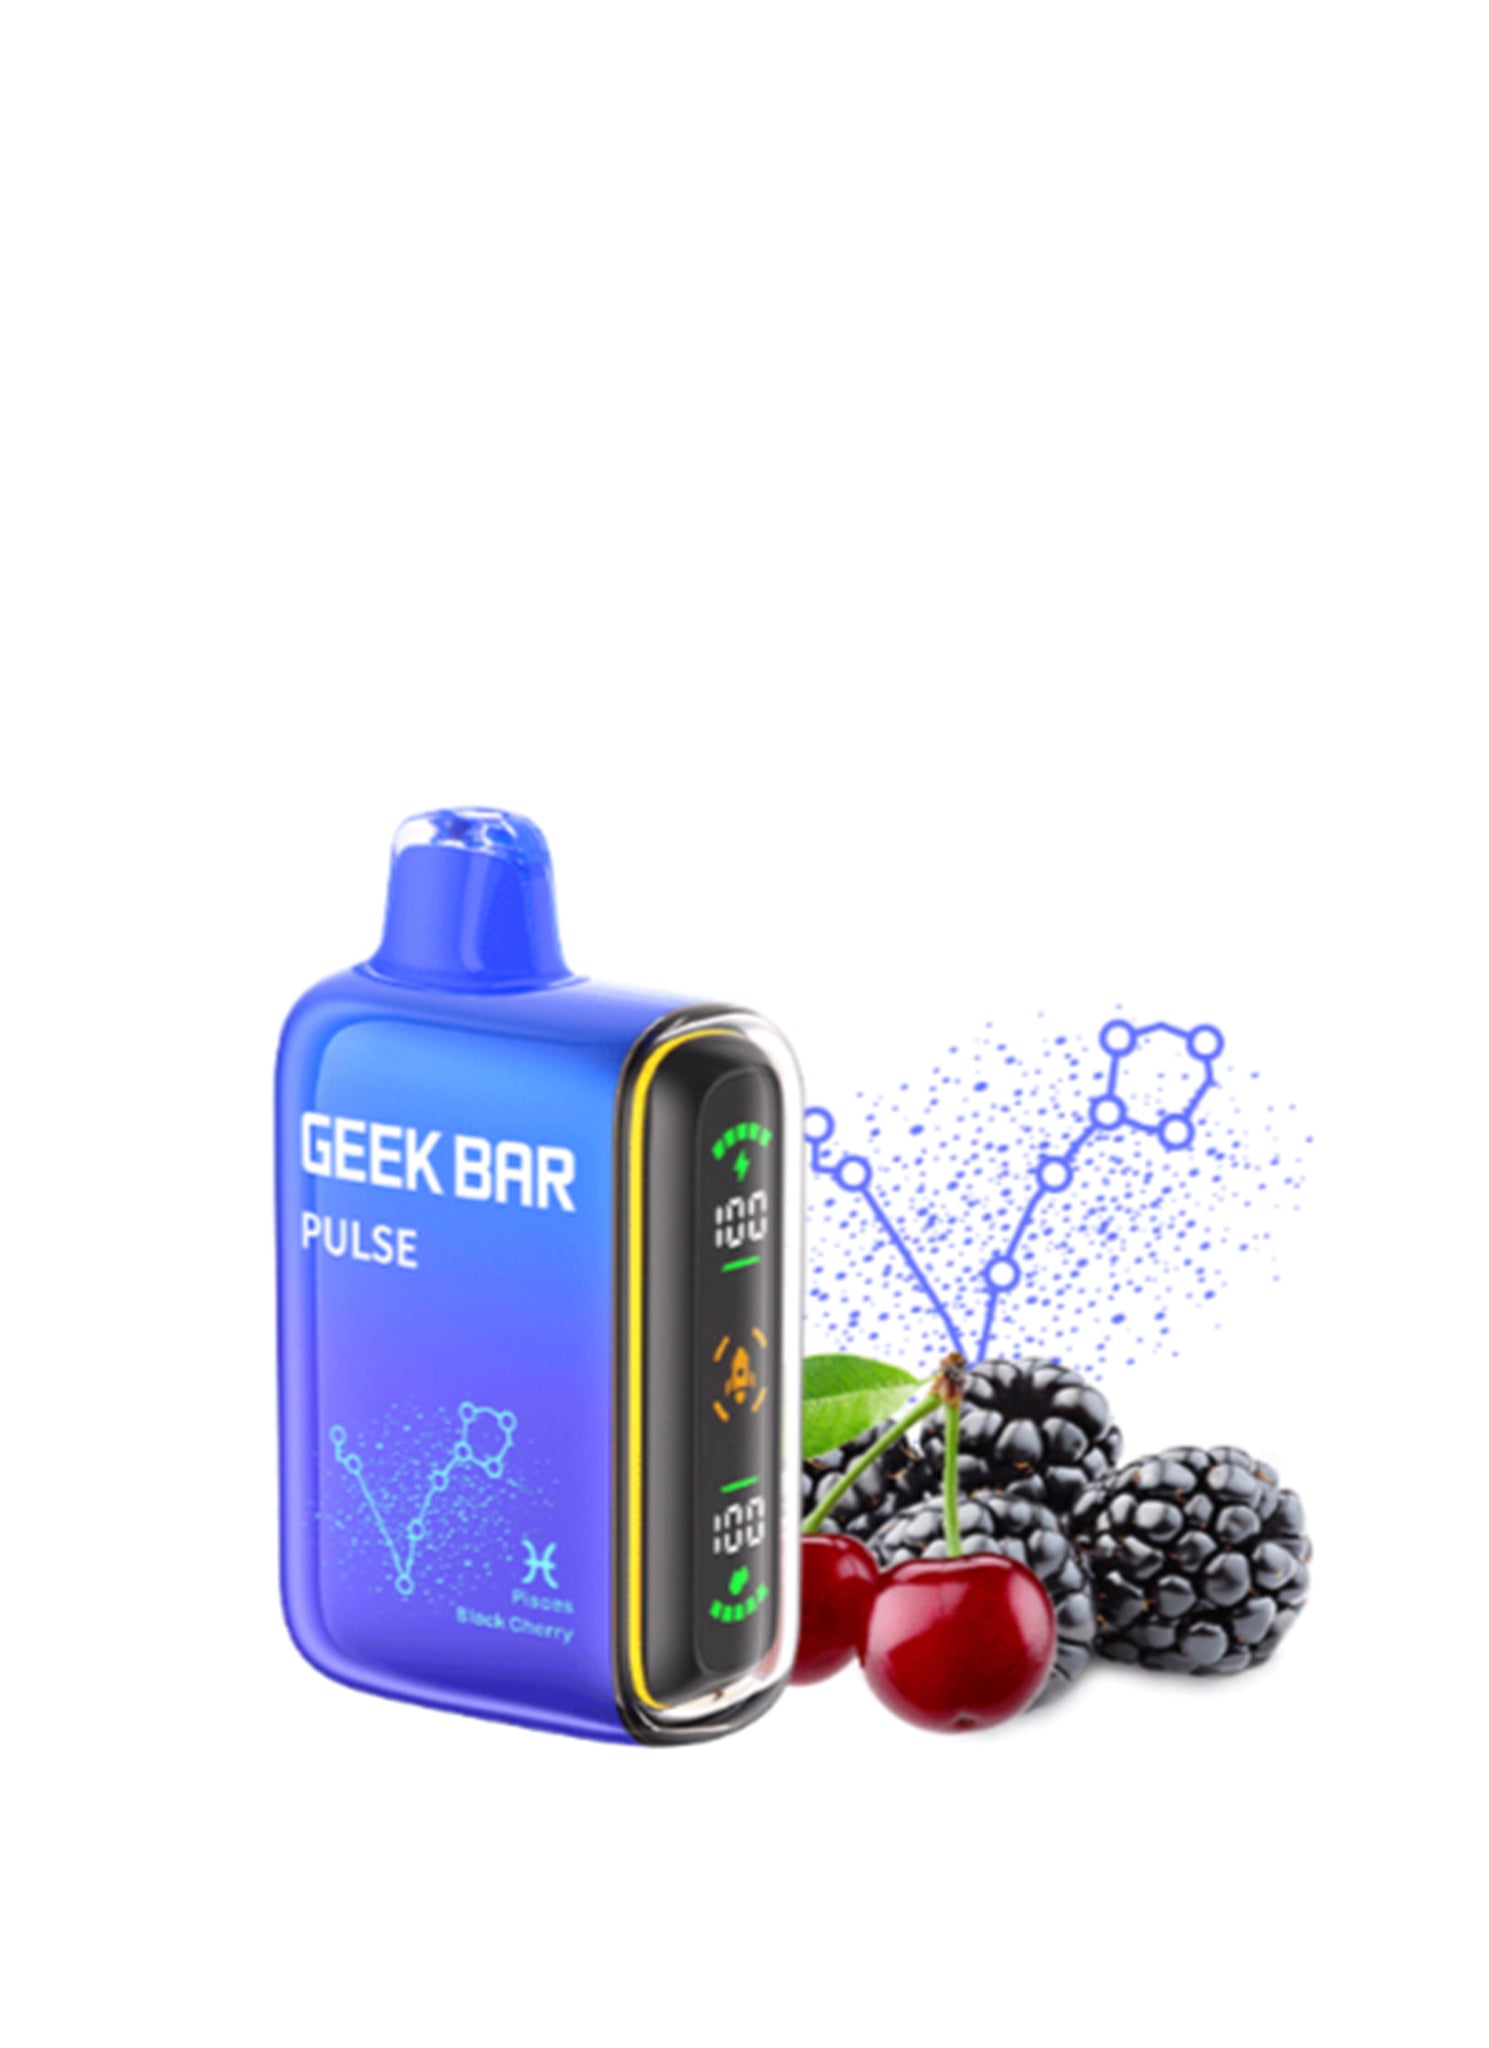 Geek Bar Pulse | Pisces Black Cherry